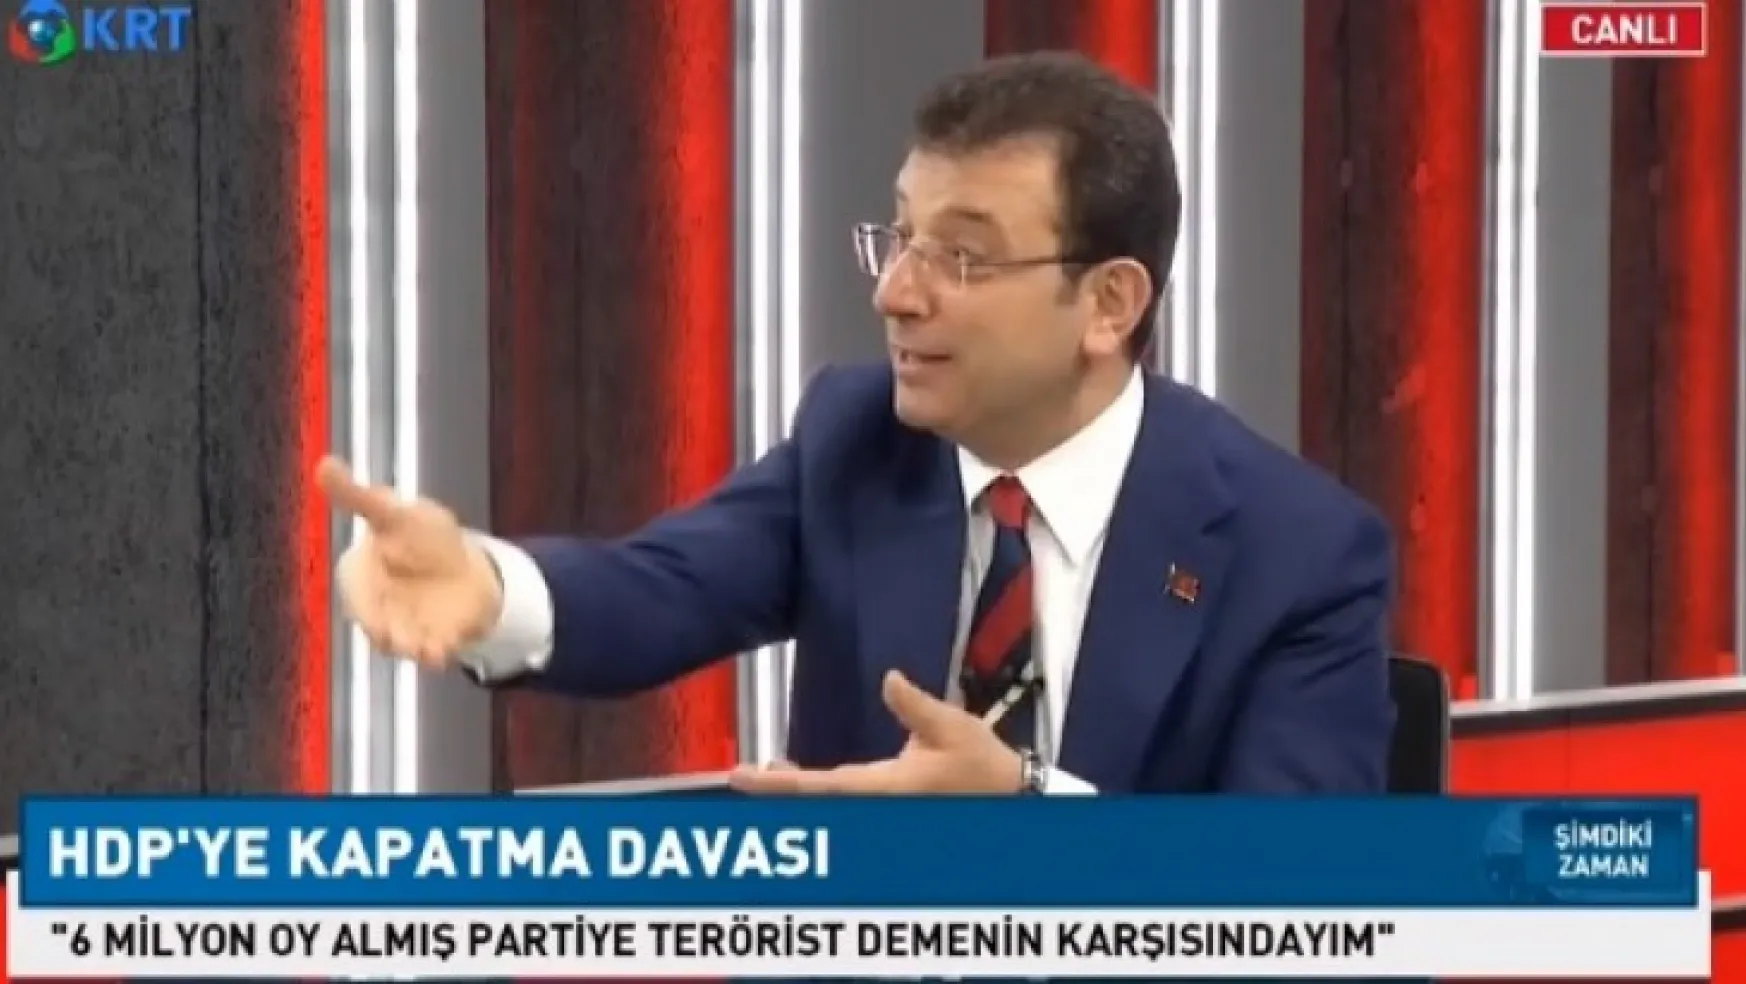 İmamoğlu: HDP'nin Kapatılmasına Karşıyım